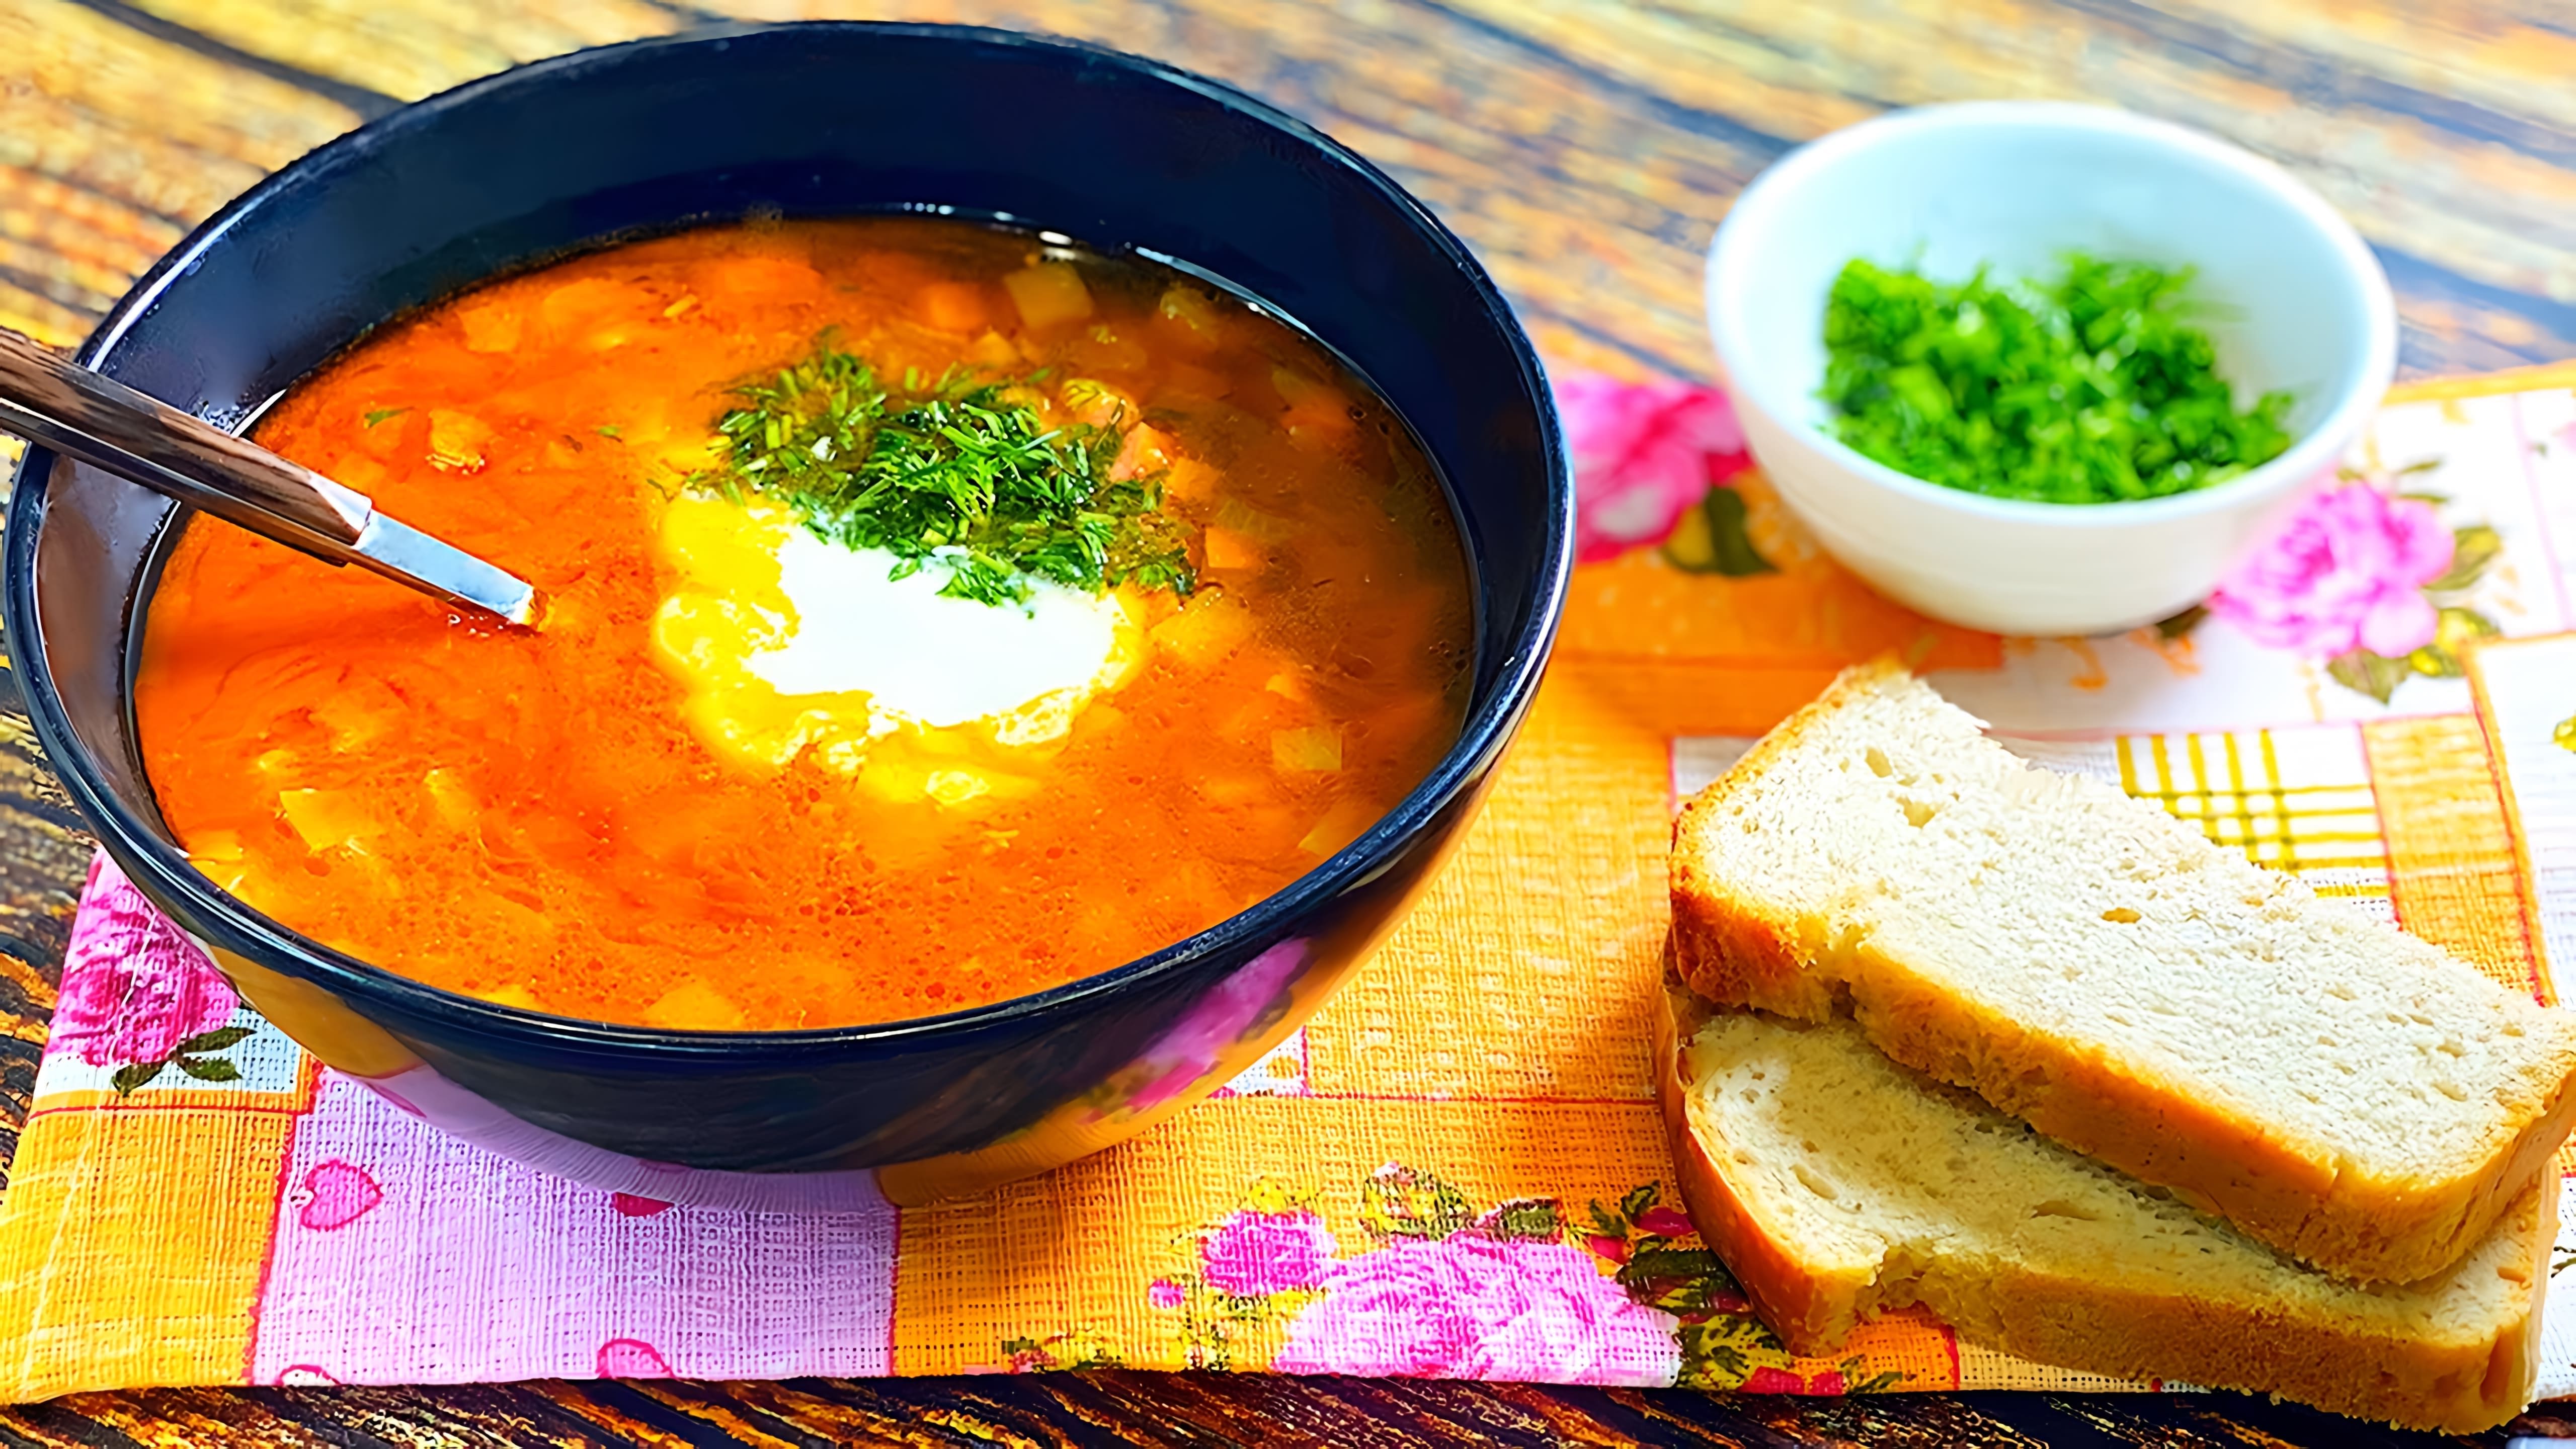 "Простой и сытный суп с репой" - это видео-ролик, который демонстрирует процесс приготовления вкусного и питательного блюда